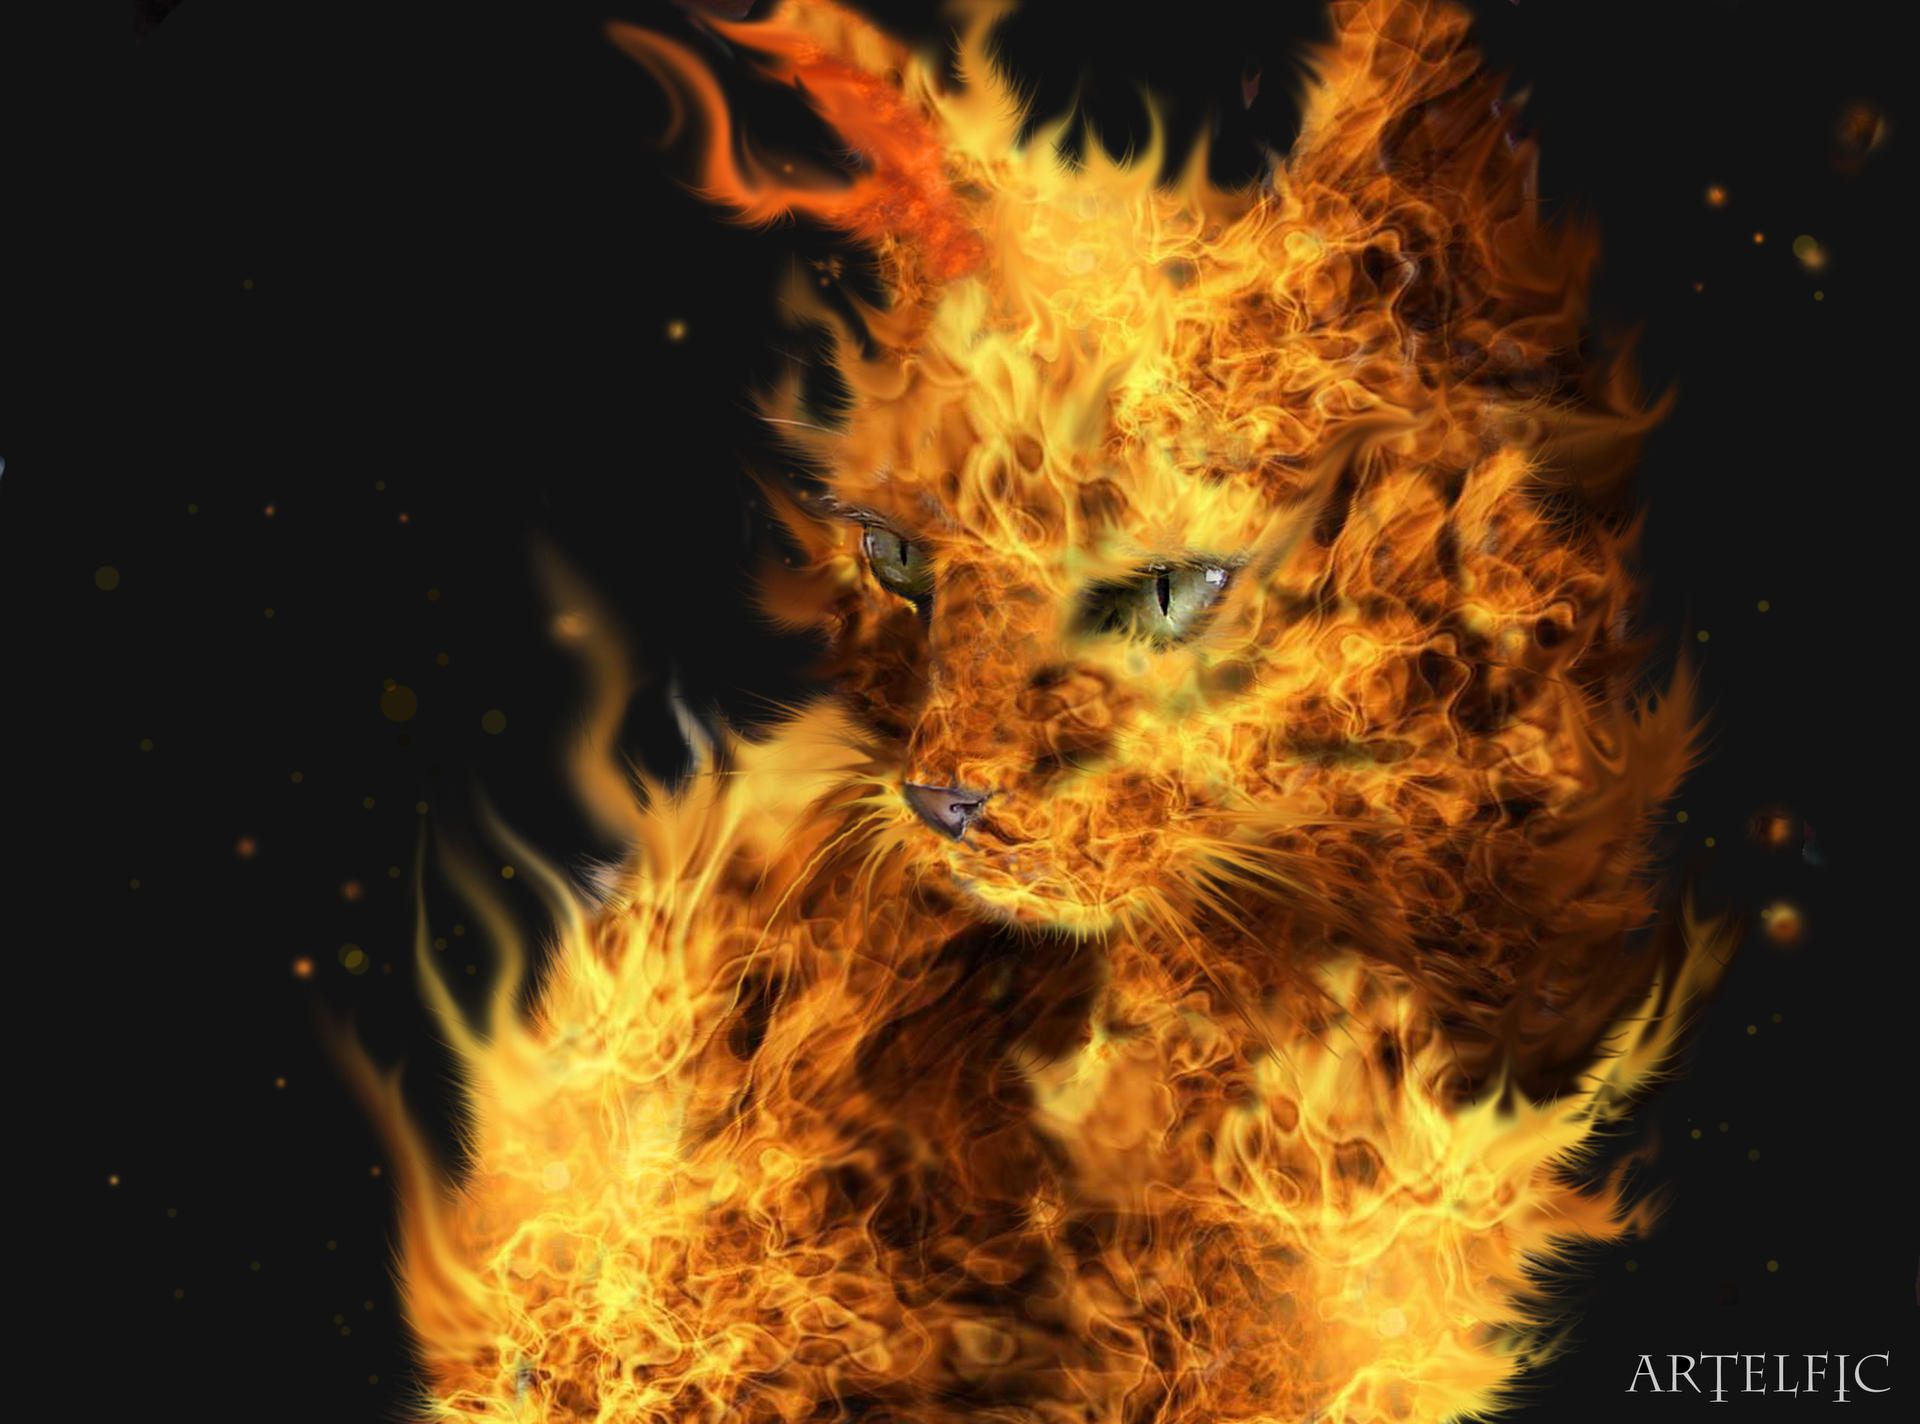 Fire cat